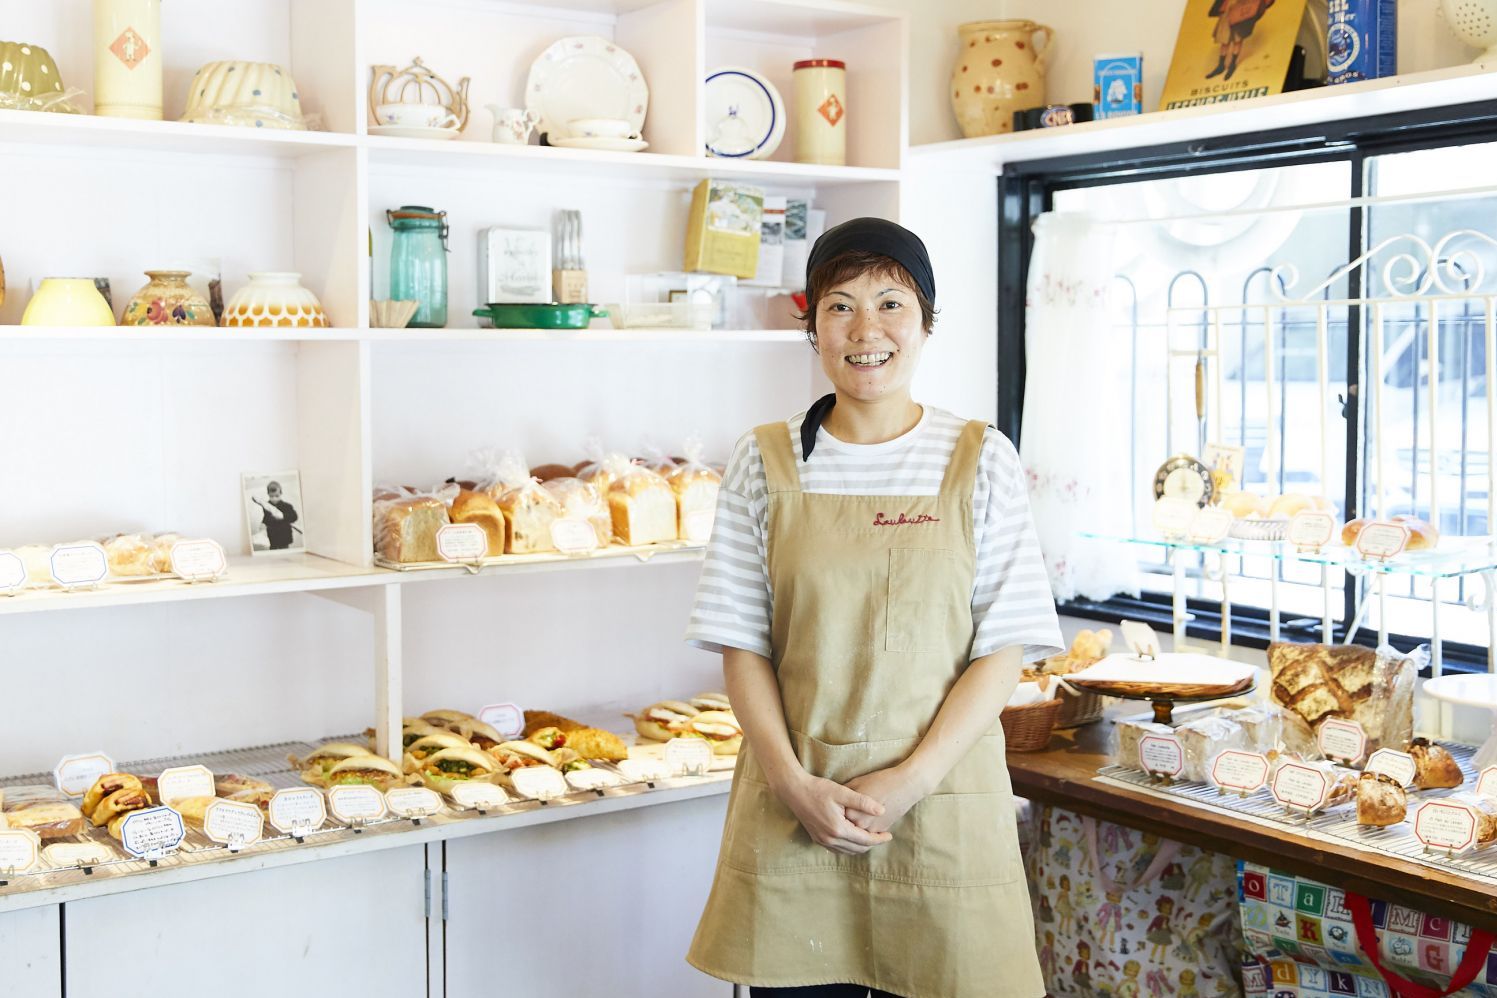 Louloutte ルルット オーナーシェフ 中岡里有子さん 日本のパンにフランスの伝統製法を 料理を作るからはじまる100人の仕事 Professions Of Food And プロフェッションズ